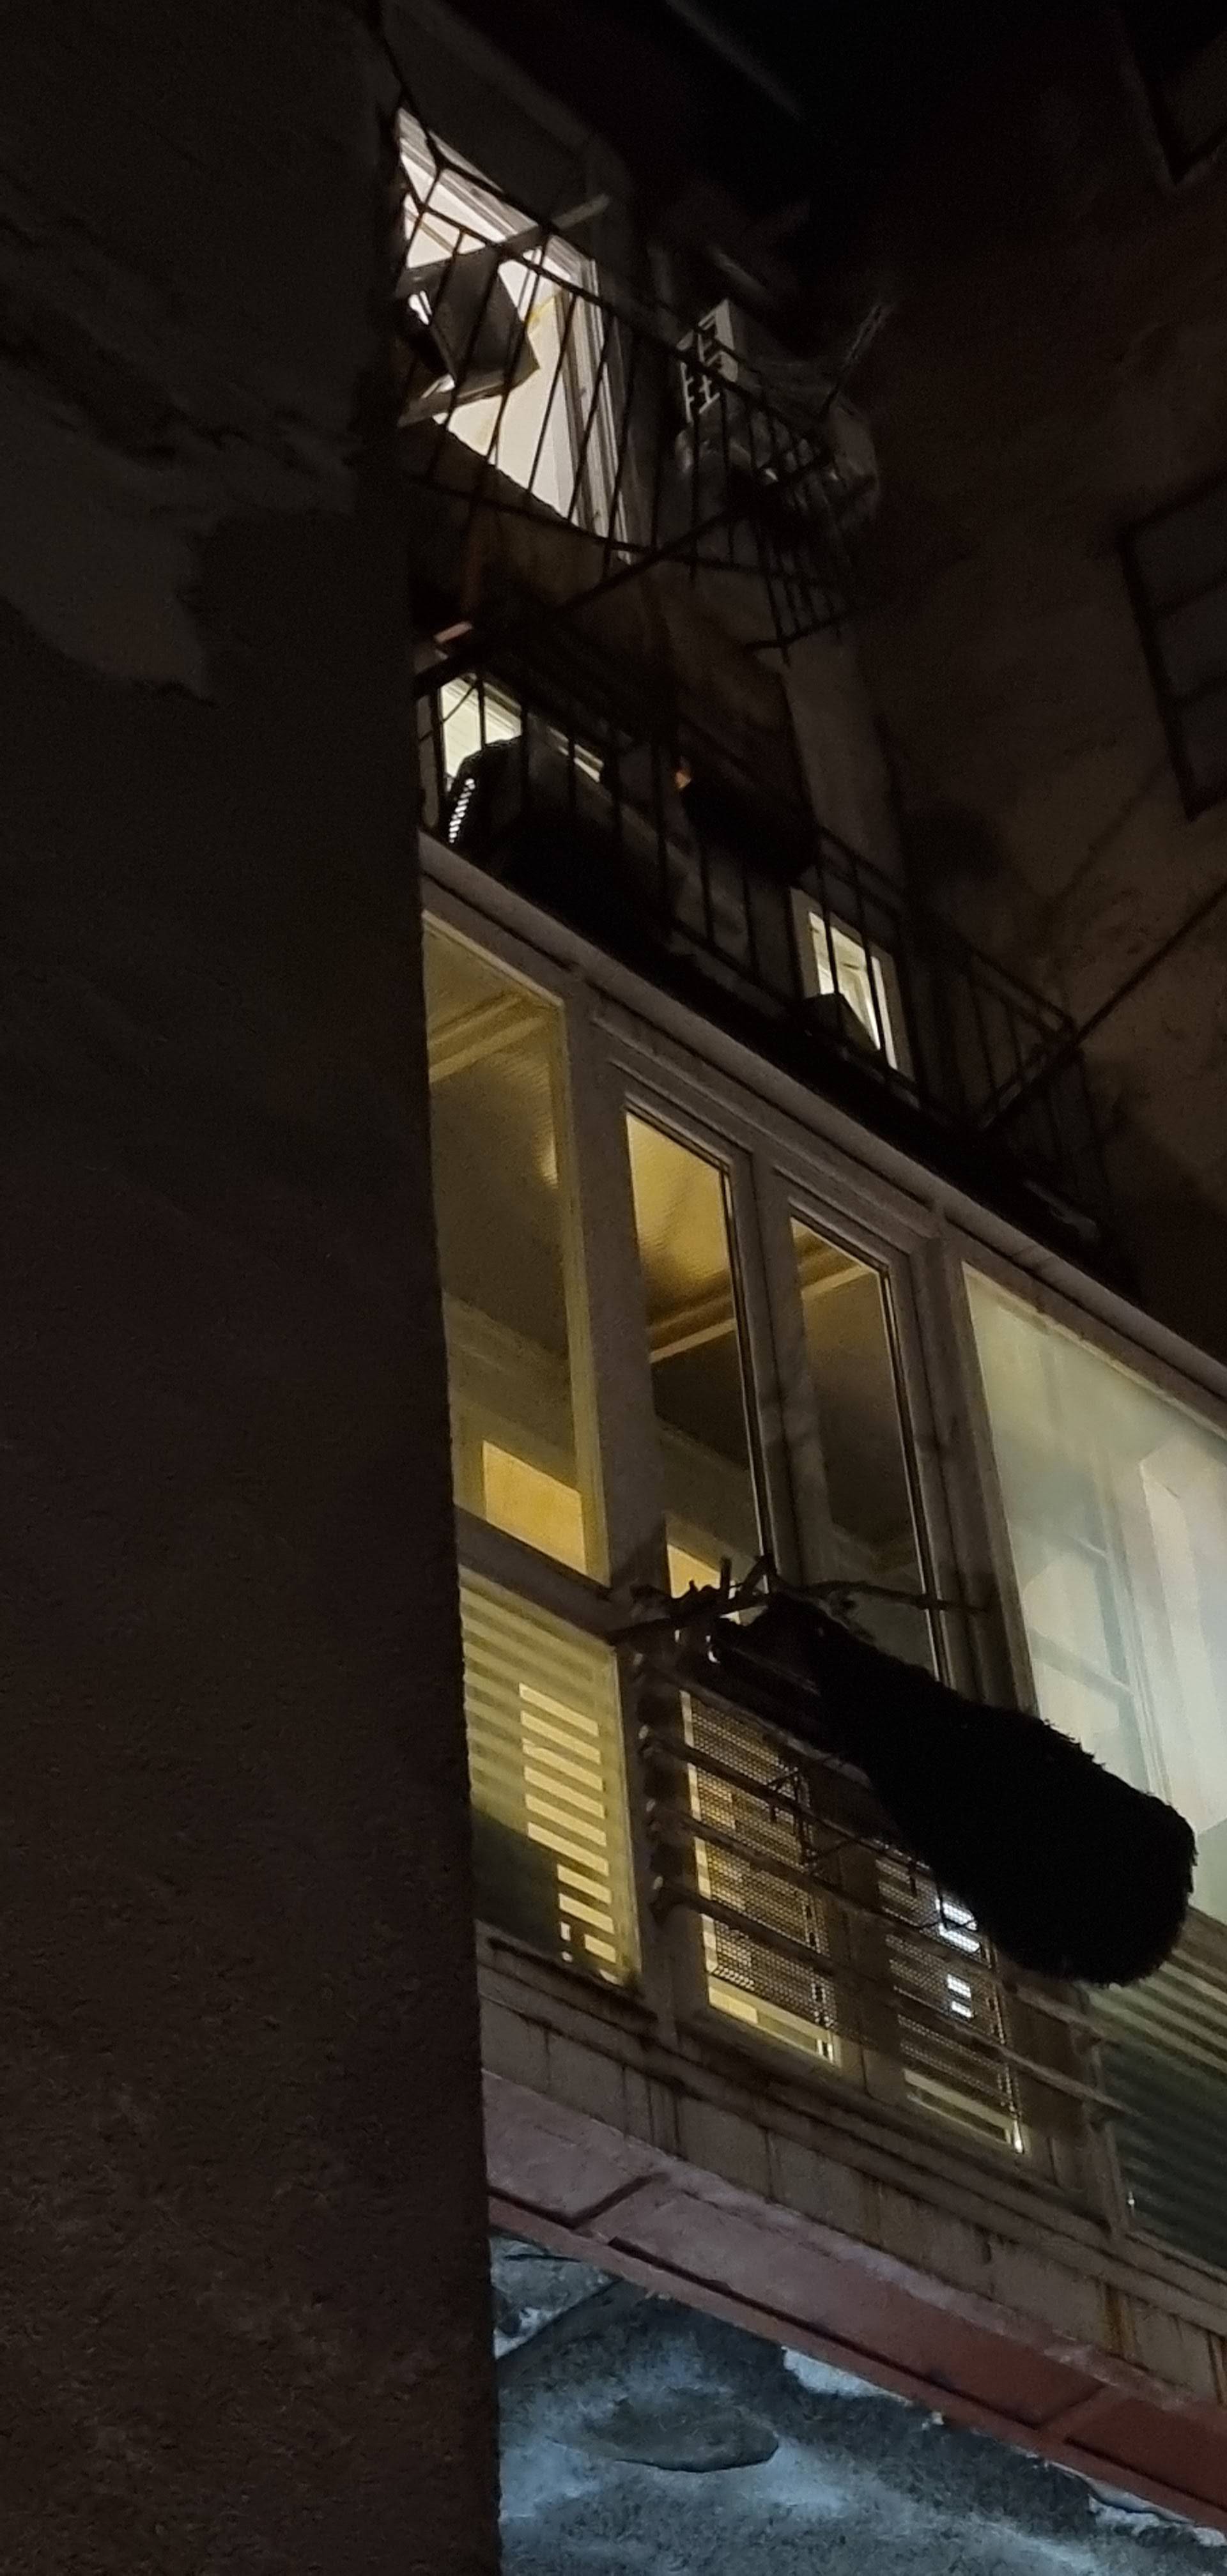 Pao balkon u Zagrebu, čovjek ozlijeđen. Stanarka: 'Pa vidite u kakvom je stanju zgrada...'